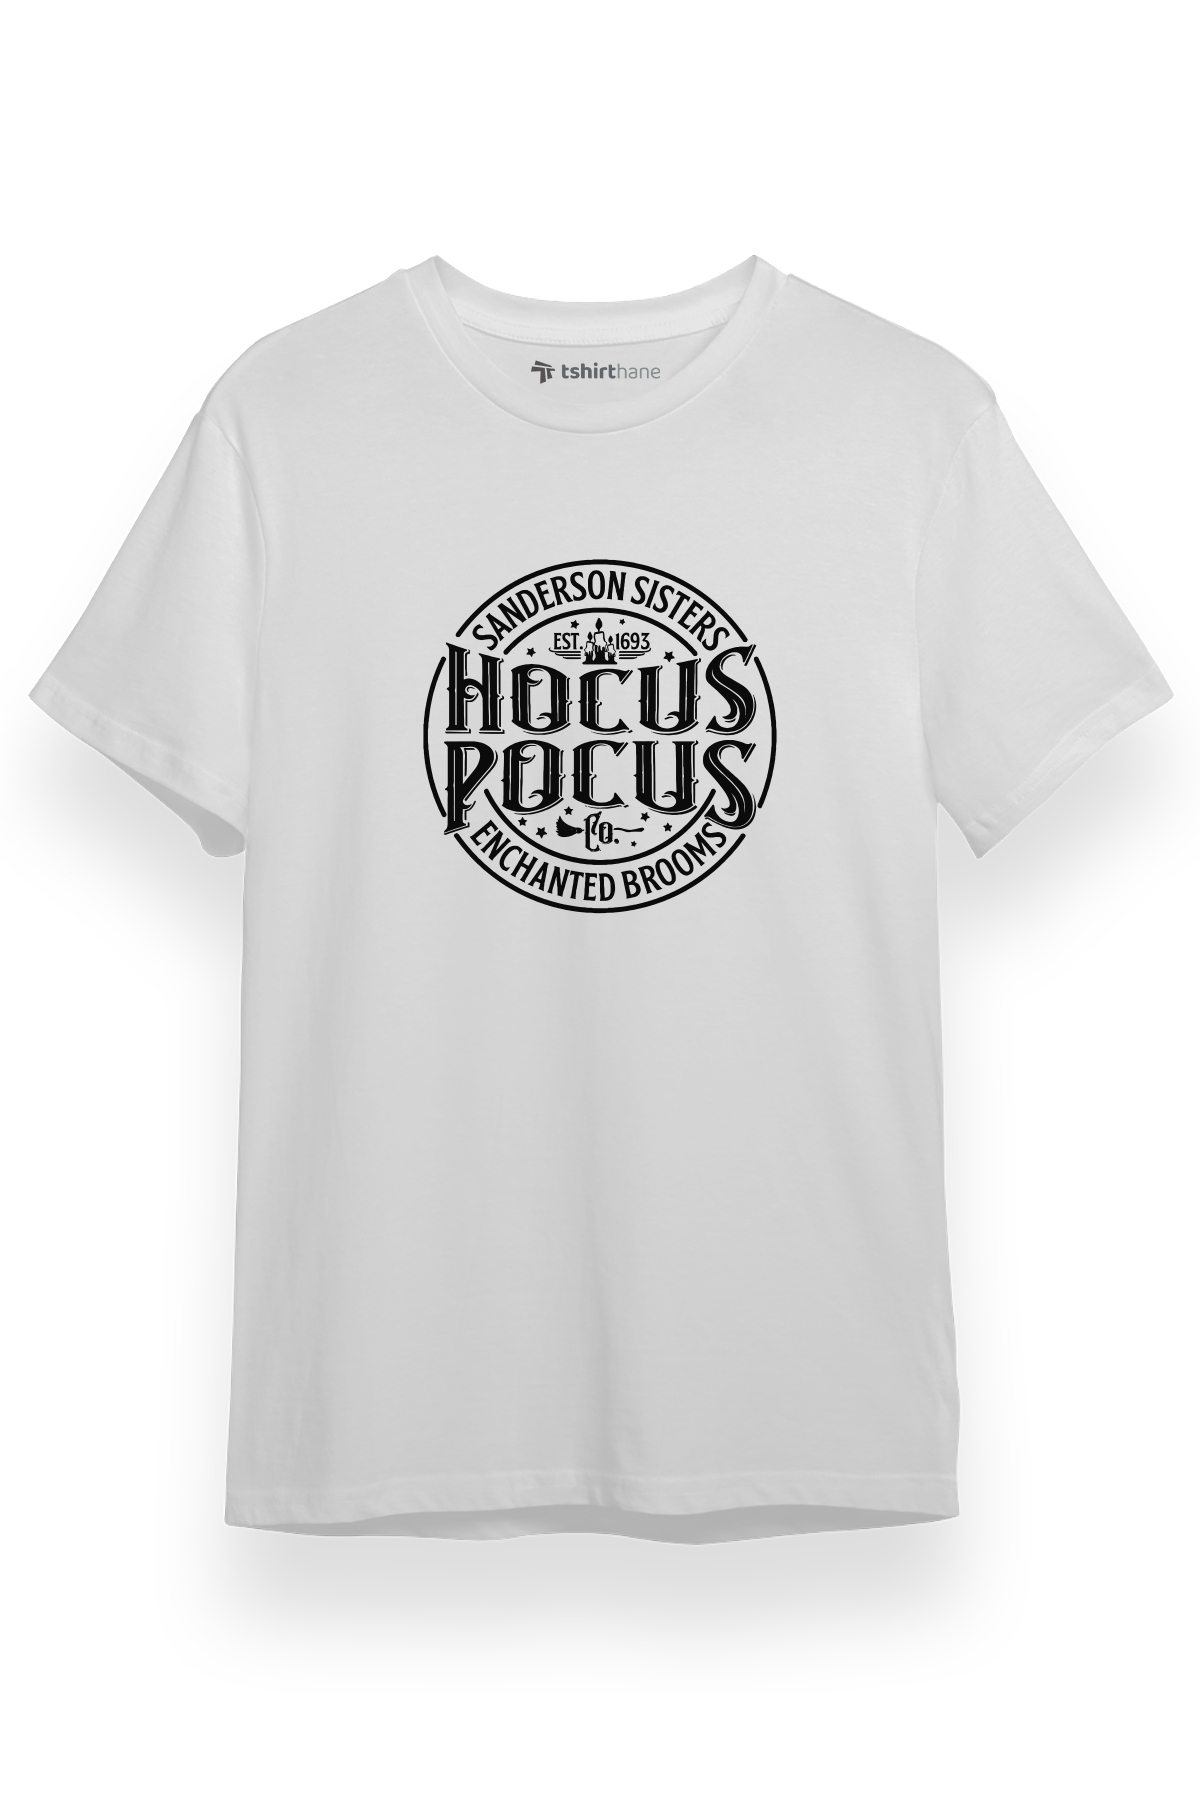 Hocus Pocus Sanderson Sisters Beyaz Kısa kol Erkek Tshirt